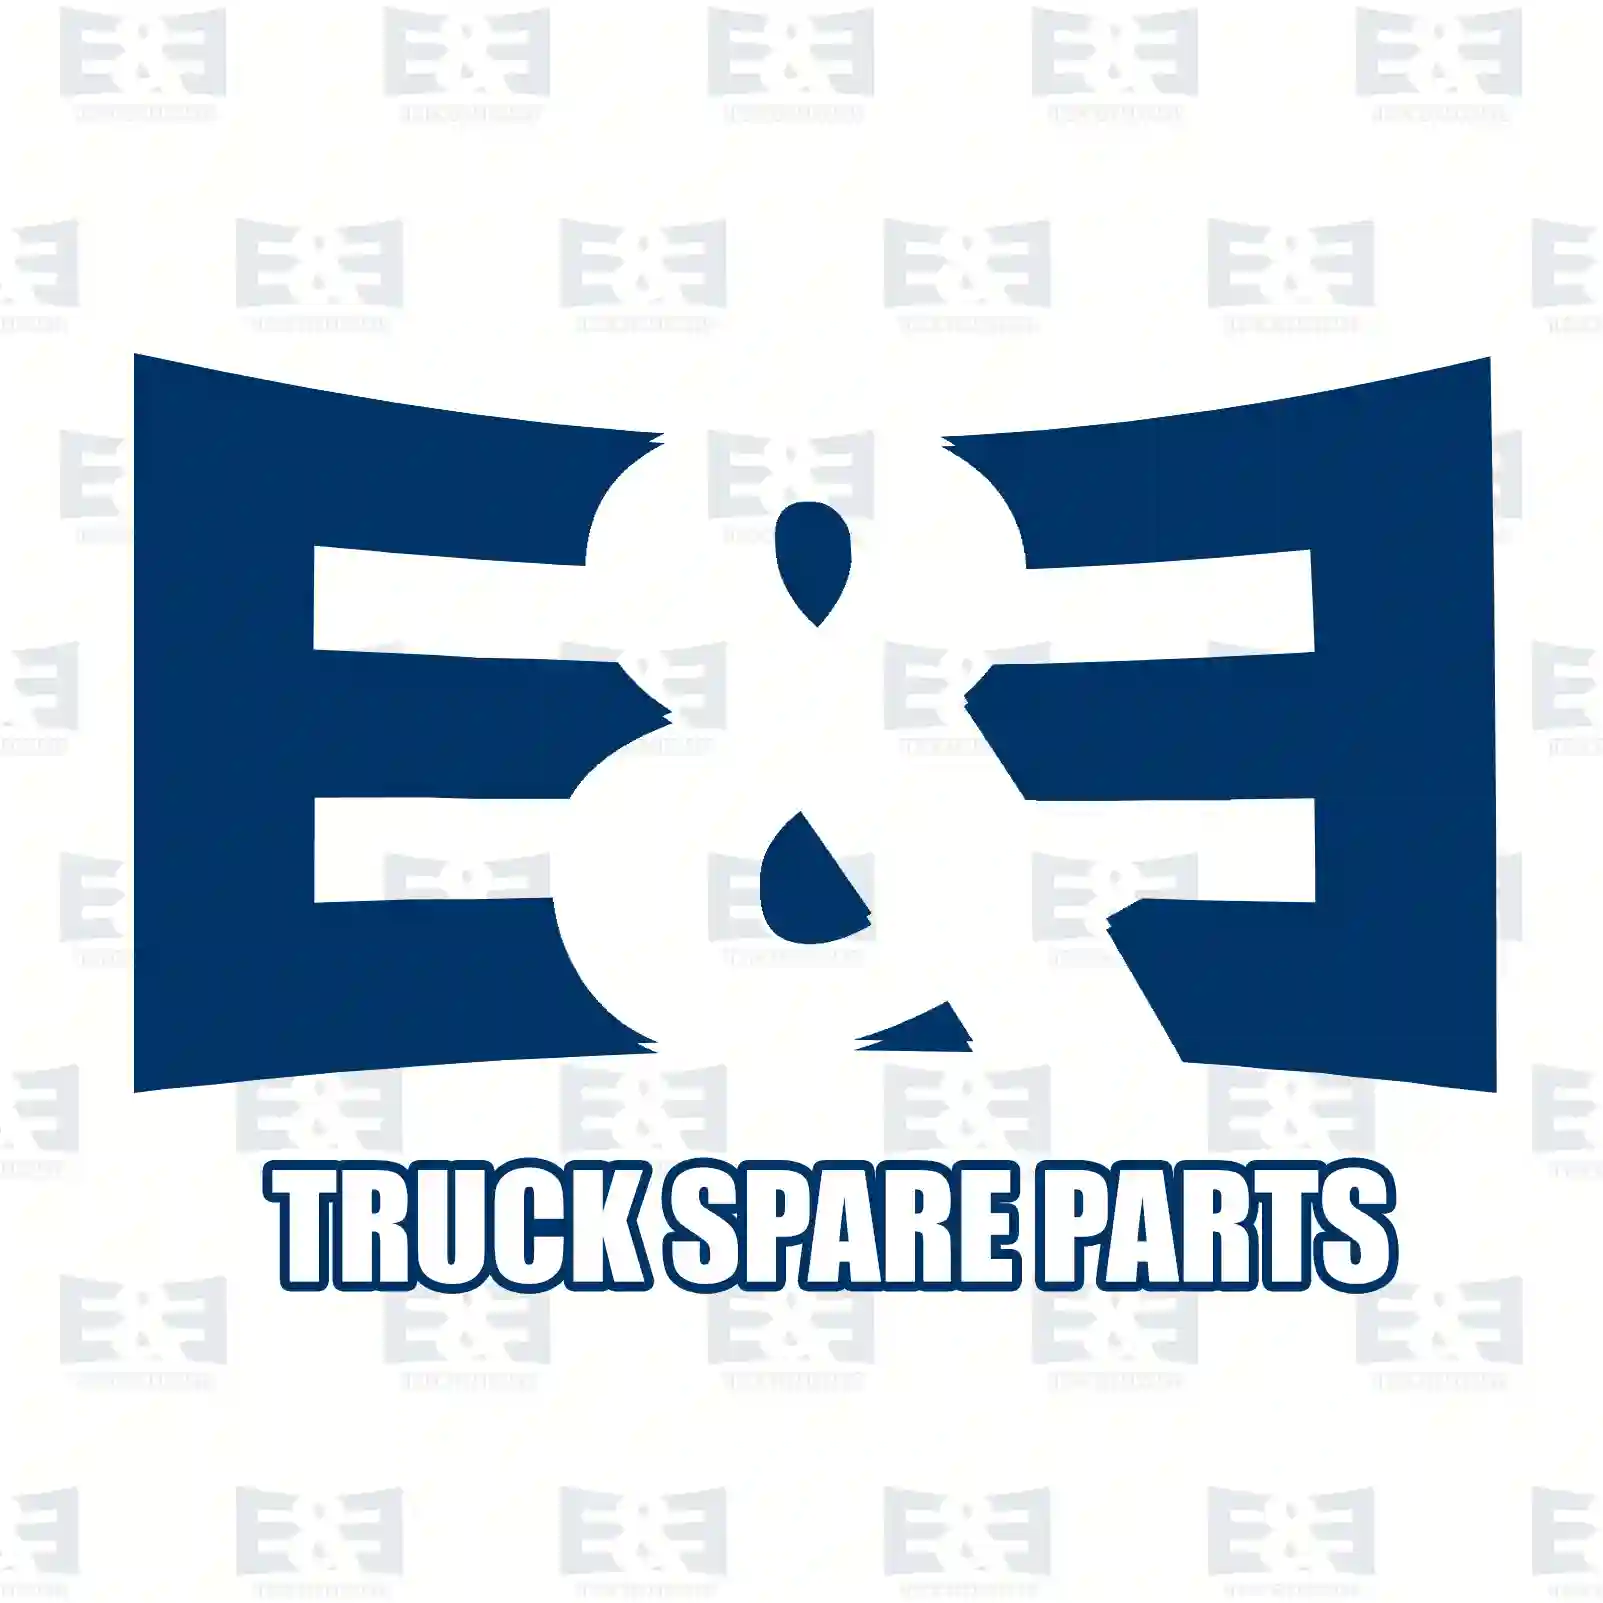 O-ring, 2E2286122, 0393841, 393841, ZG02916-0008 ||  2E2286122 E&E Truck Spare Parts | Truck Spare Parts, Auotomotive Spare Parts O-ring, 2E2286122, 0393841, 393841, ZG02916-0008 ||  2E2286122 E&E Truck Spare Parts | Truck Spare Parts, Auotomotive Spare Parts